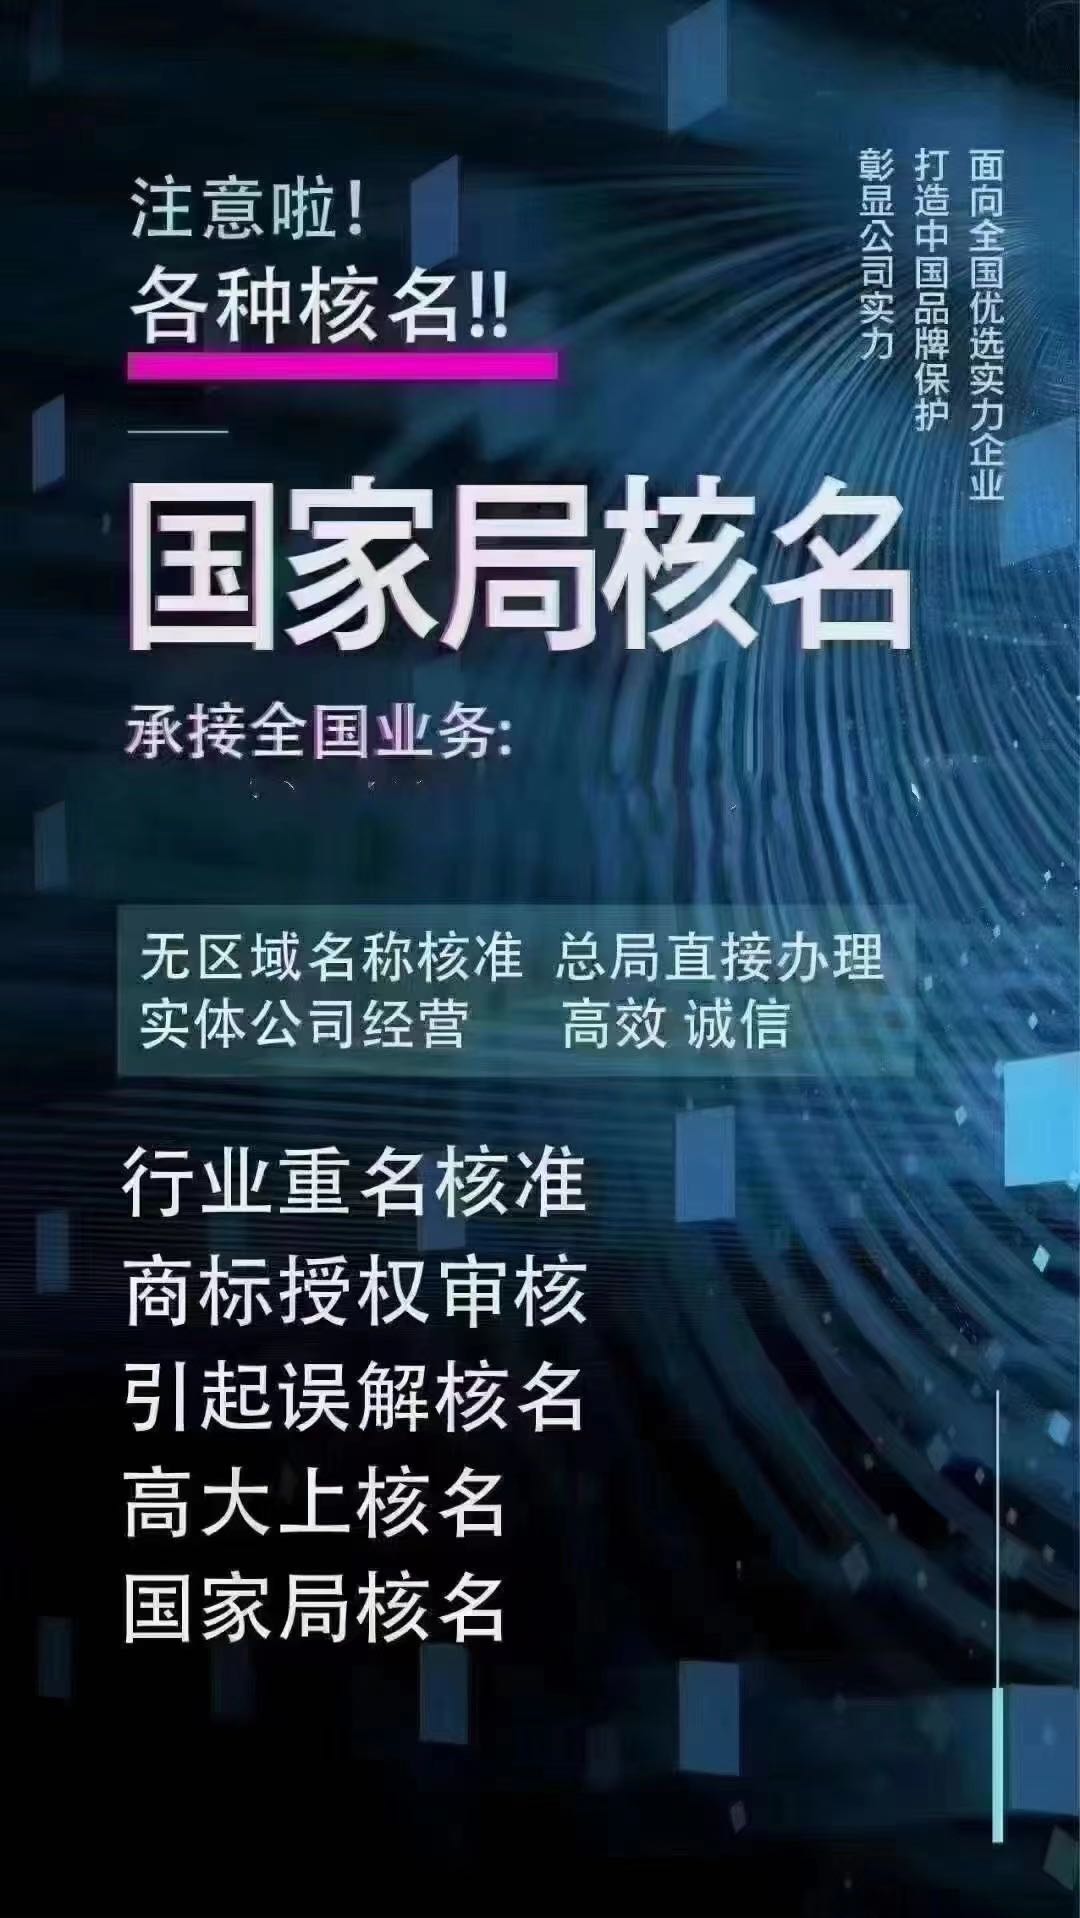 上海无地域名称国家局集团公司有什么条件